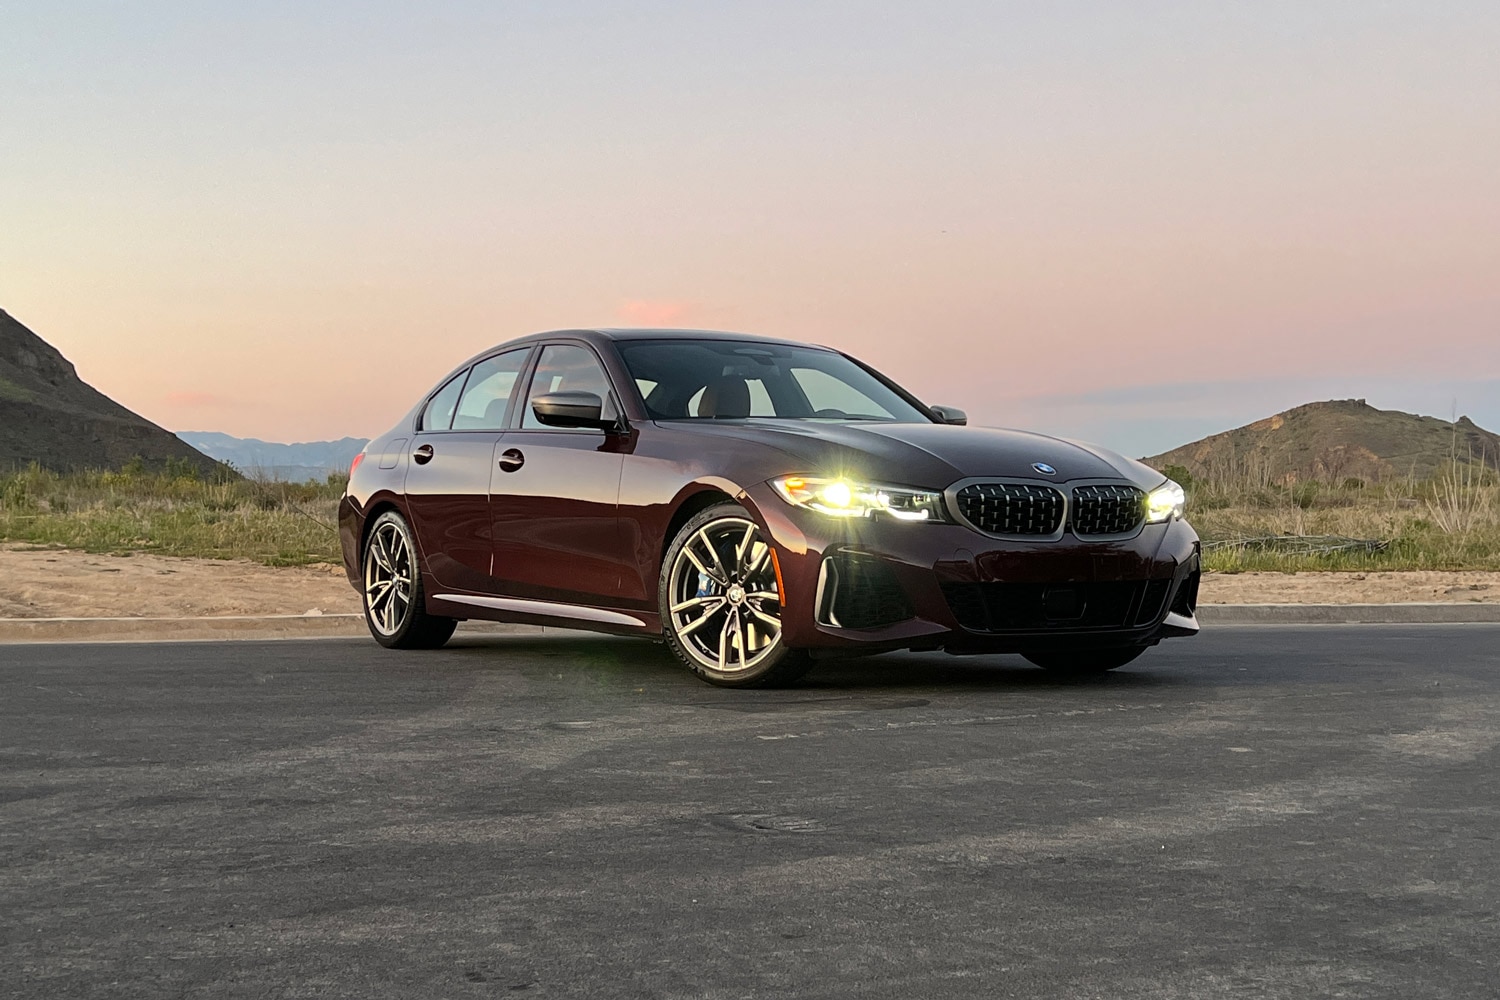 2022 BMW 3 Series Review: Still the Standard Bearer